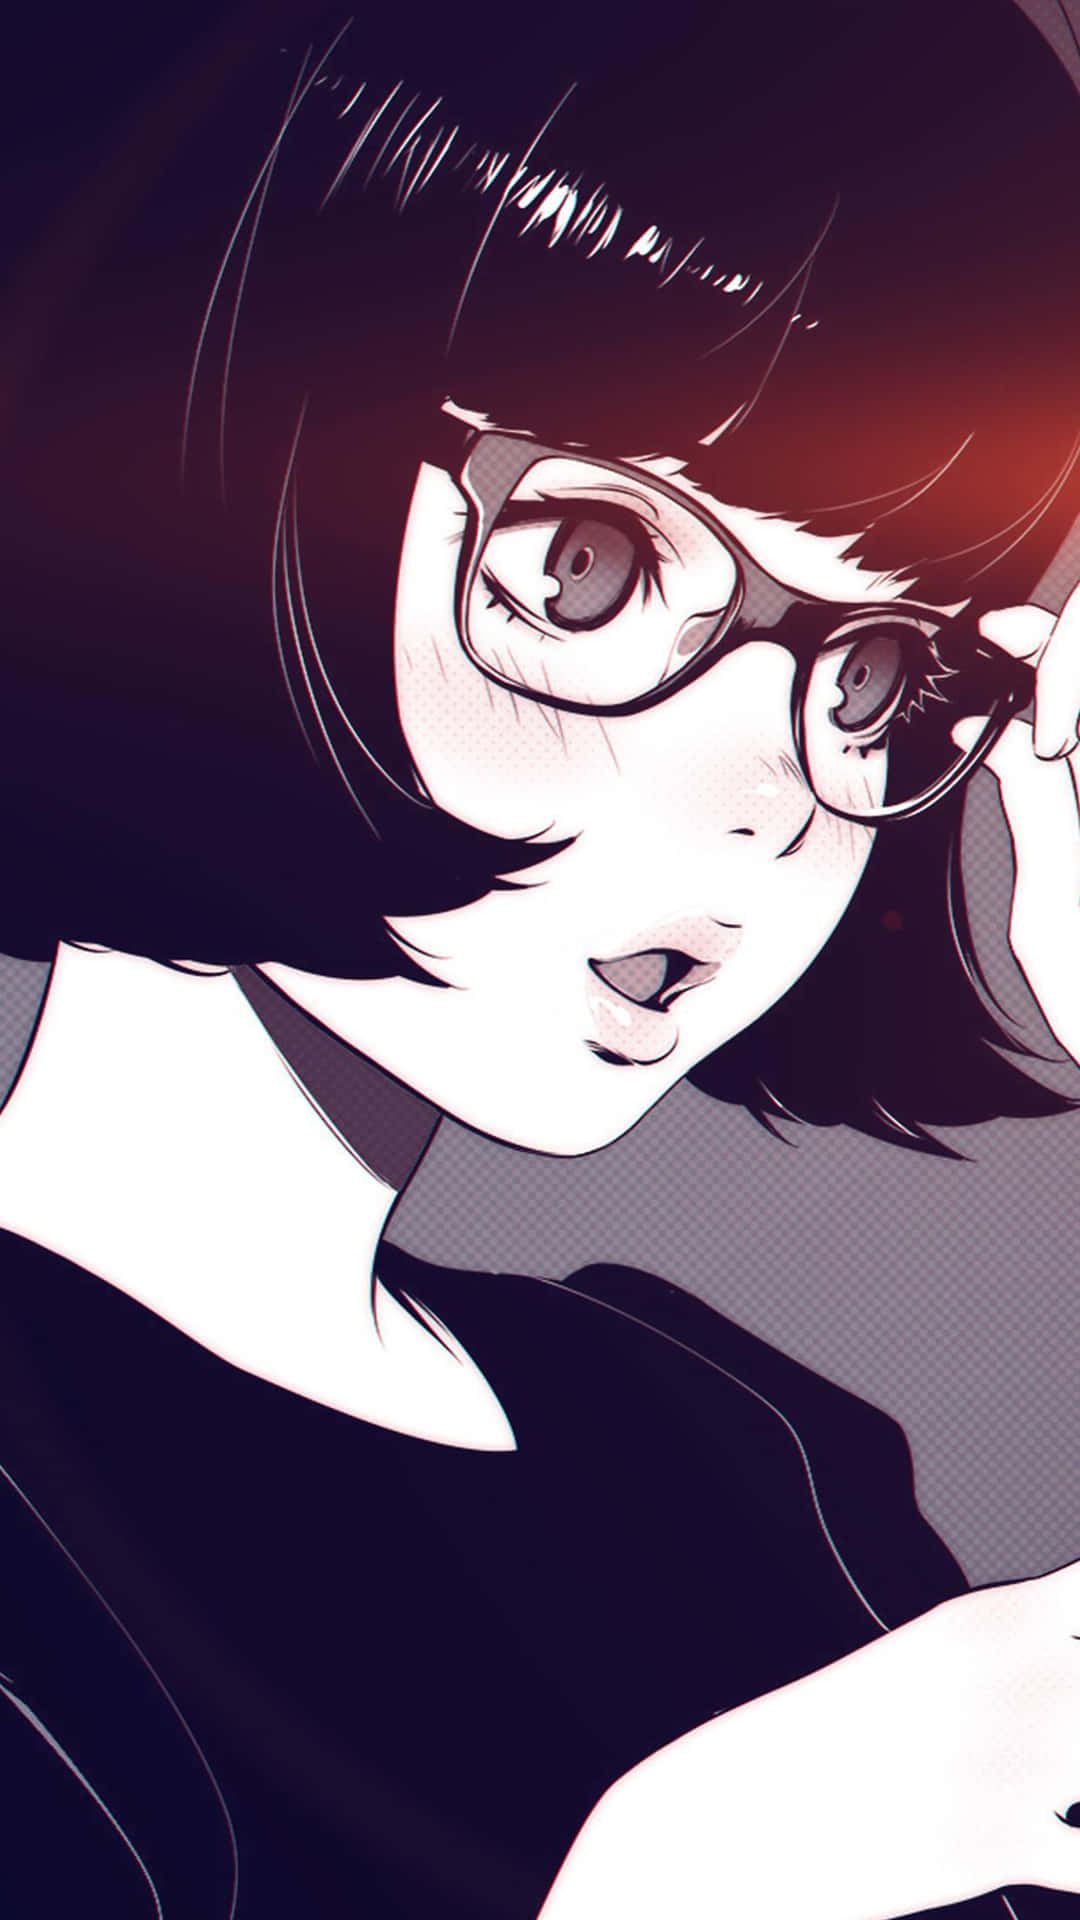 Short Haired Anime Girl Aesthetic With Glasses Wallpaper